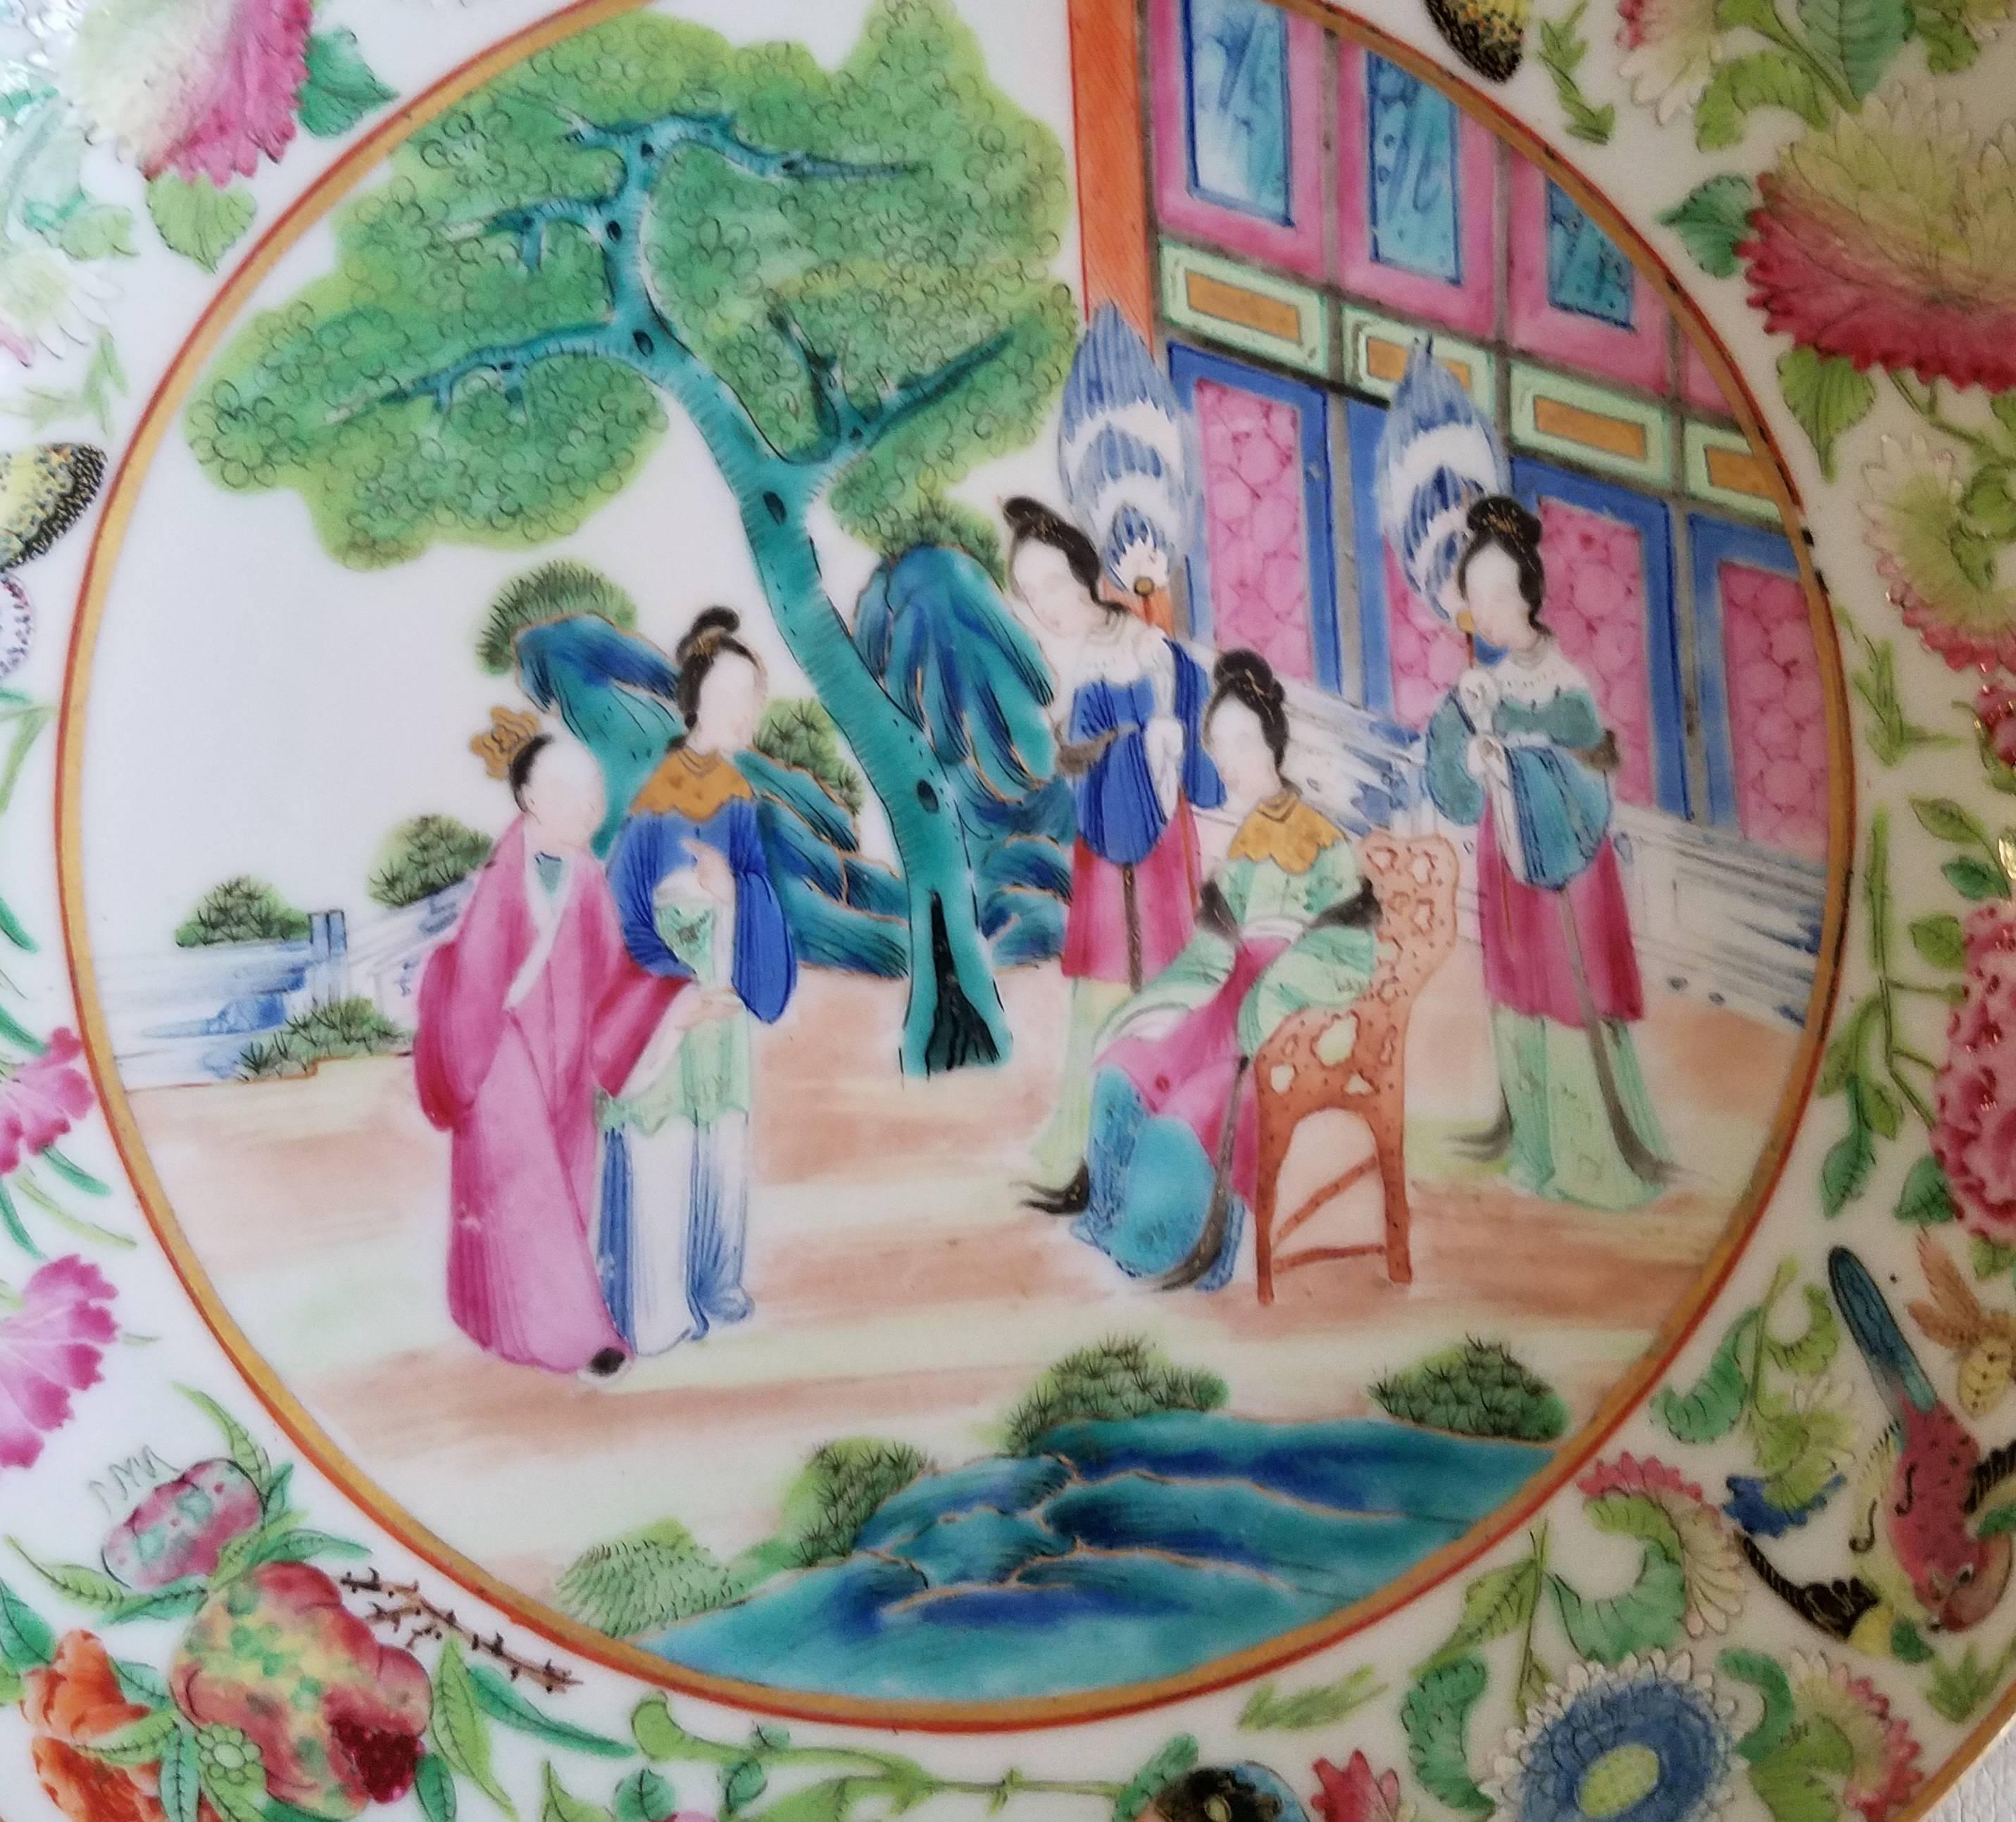 Die Sauce Schüssel fein gemalt mit Mandarin Figuren in der zentralen Vertiefung und Blumen und Schmetterlinge auf dem Rand.
 